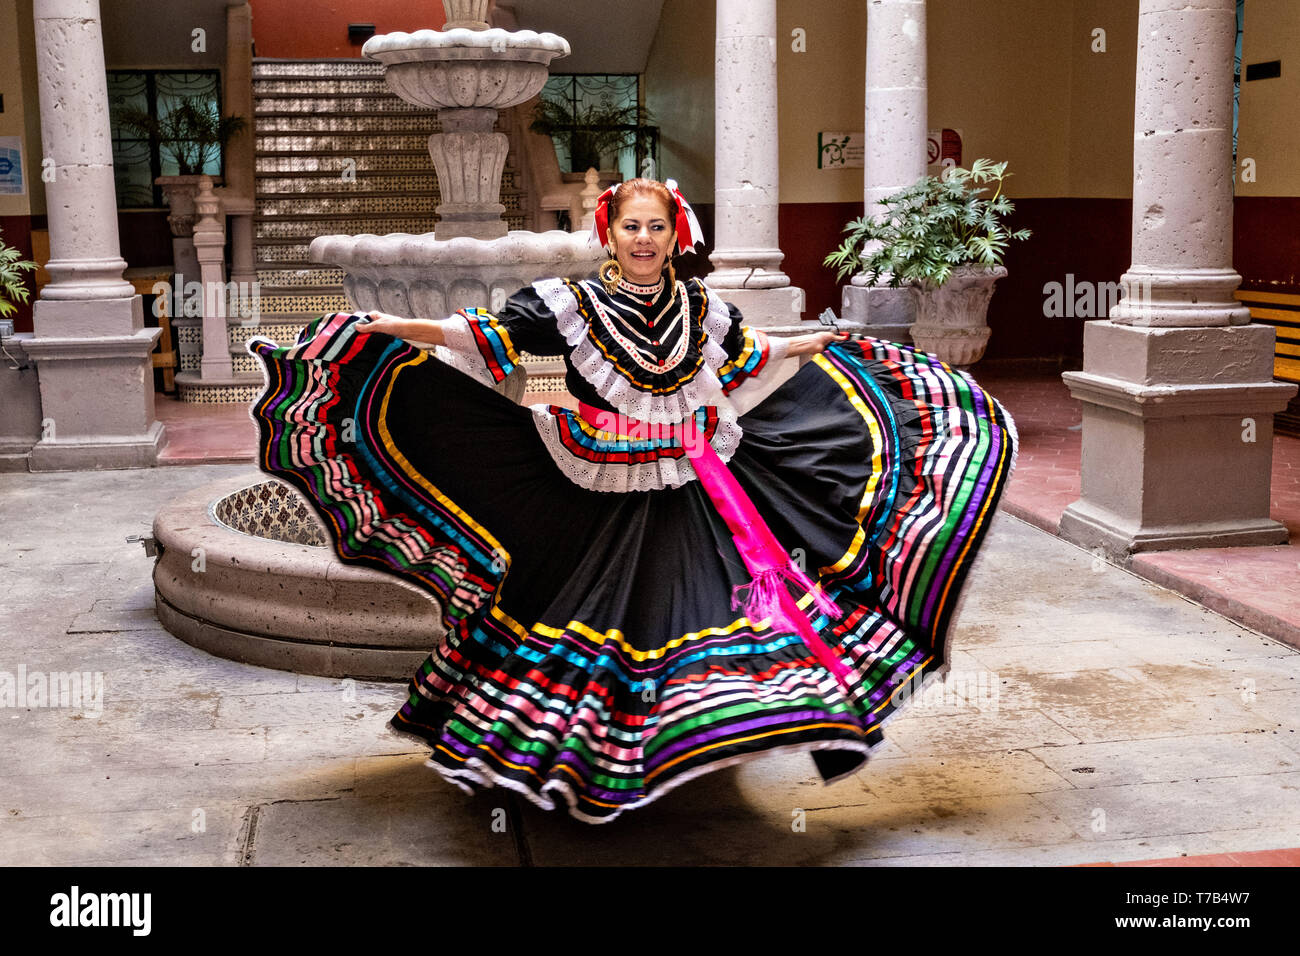 Un bailarín folclórico mexicano en un tradicional vestido de china poblana  realiza el Jarabe de danza folclórica en el patio de estilo arcade del  Ayuntamiento de Jalostotitlan, Jalisco, México Fotografía de stock -